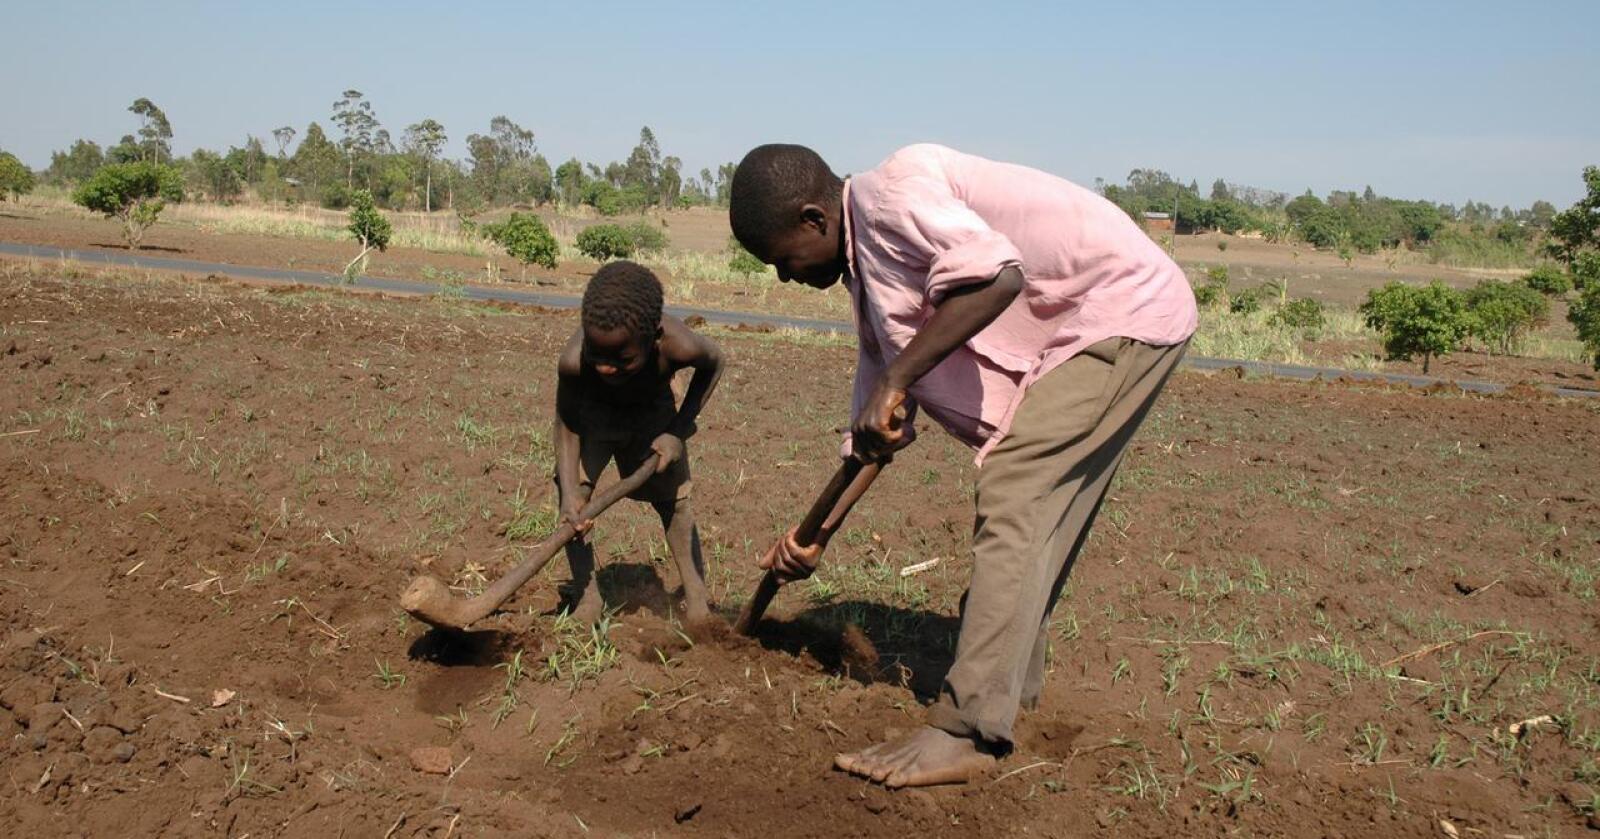 Ekstremvær har ødelagt avlinger og redusert inntektene til mange bønder de siste årene. Malawi er ett av landene som har vært hardt rammet. Arkivfoto: Camilla Mellemstrand